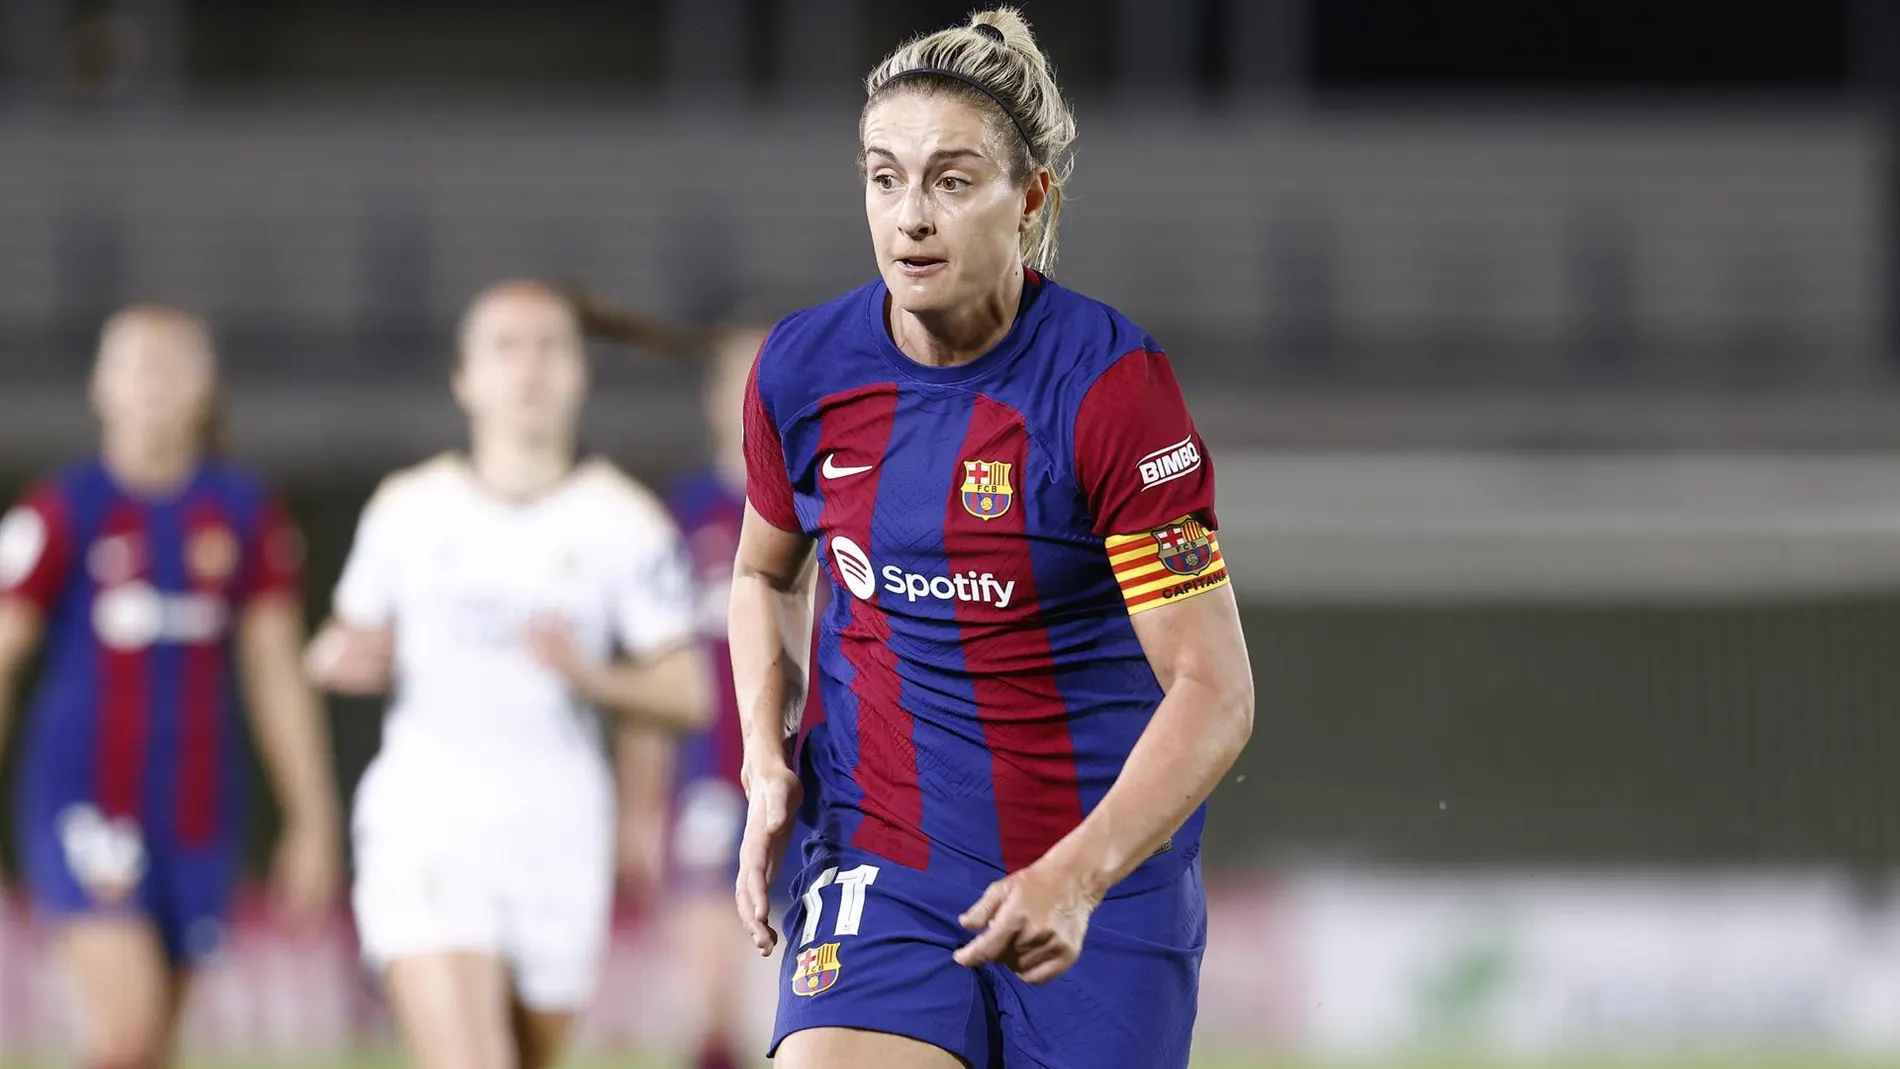 AV.- Fútbol.- La centrocampista Alexia Putellas renueva con el FC Barcelona hasta 2026